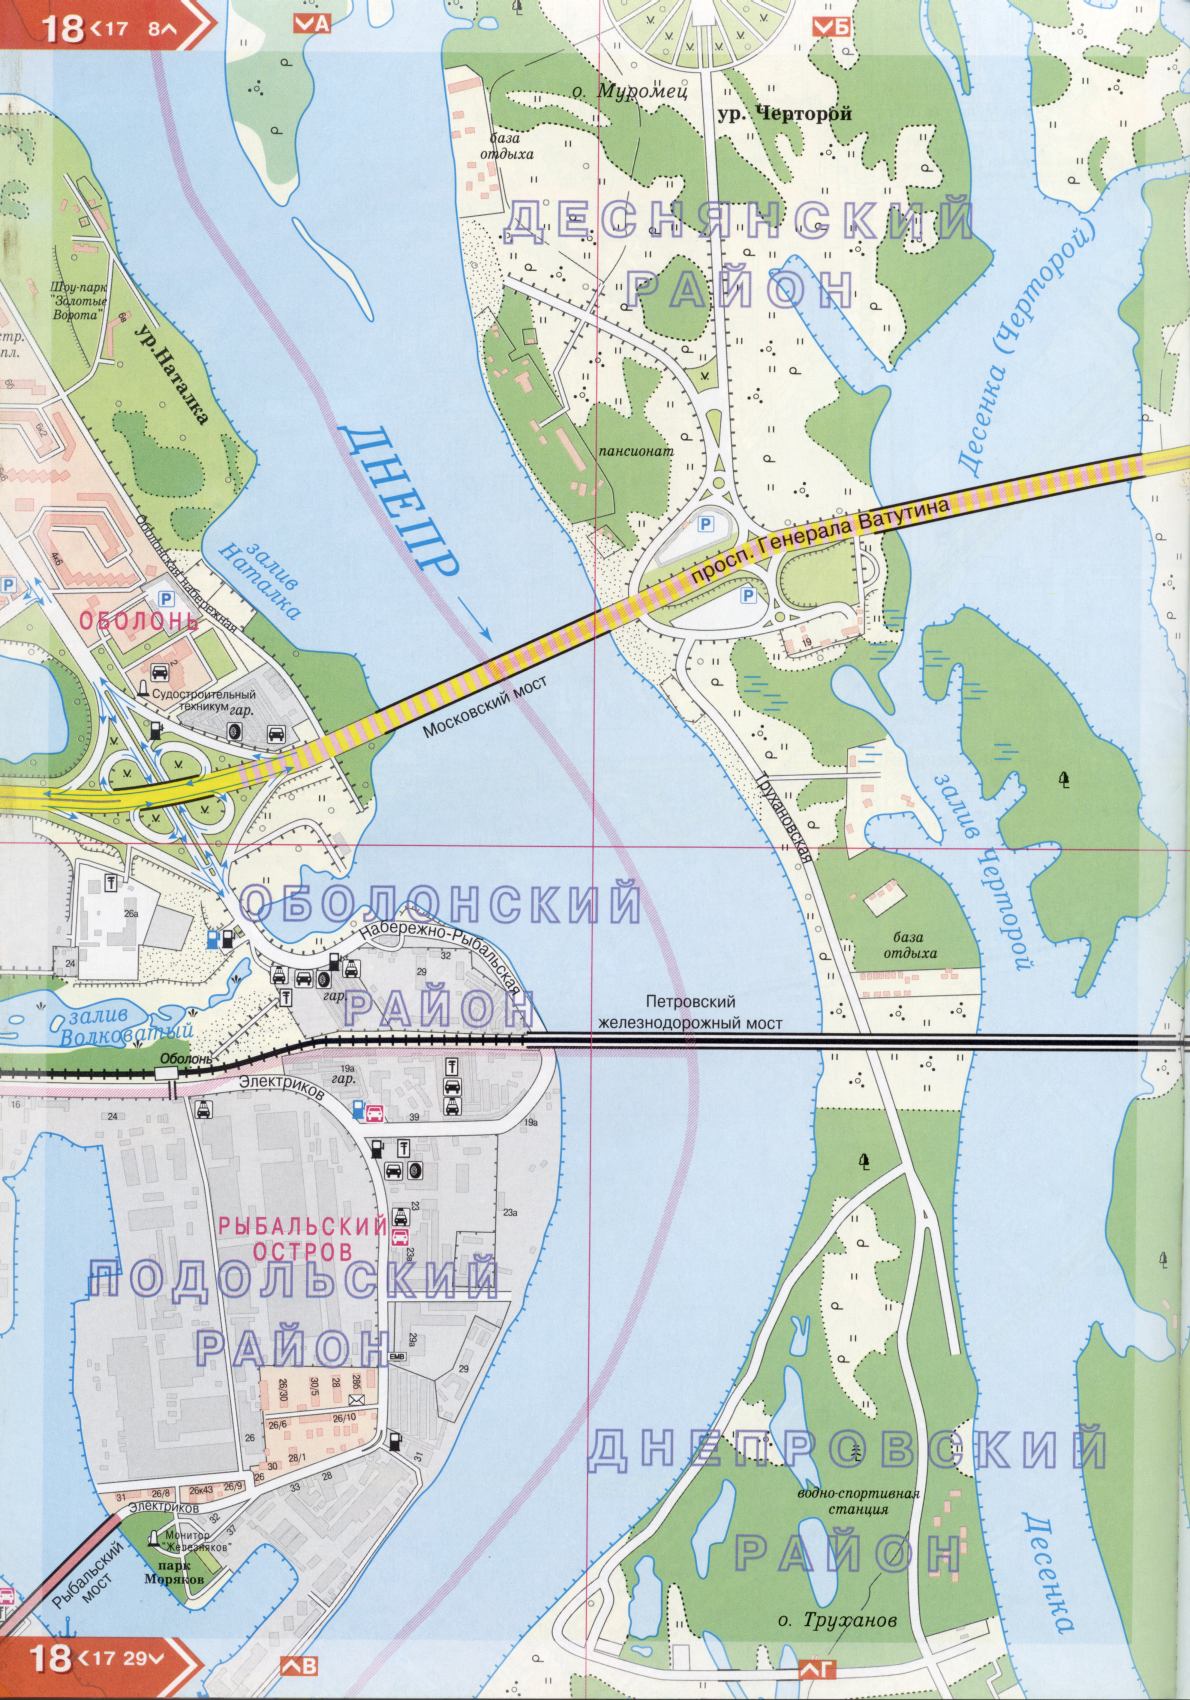 Kiew Karte Details 1cm = 150m für 45 Blatt. Karte von Kiew aus dem Atlas von Autobahnen. Laden Sie eine detaillierte Karte, F1